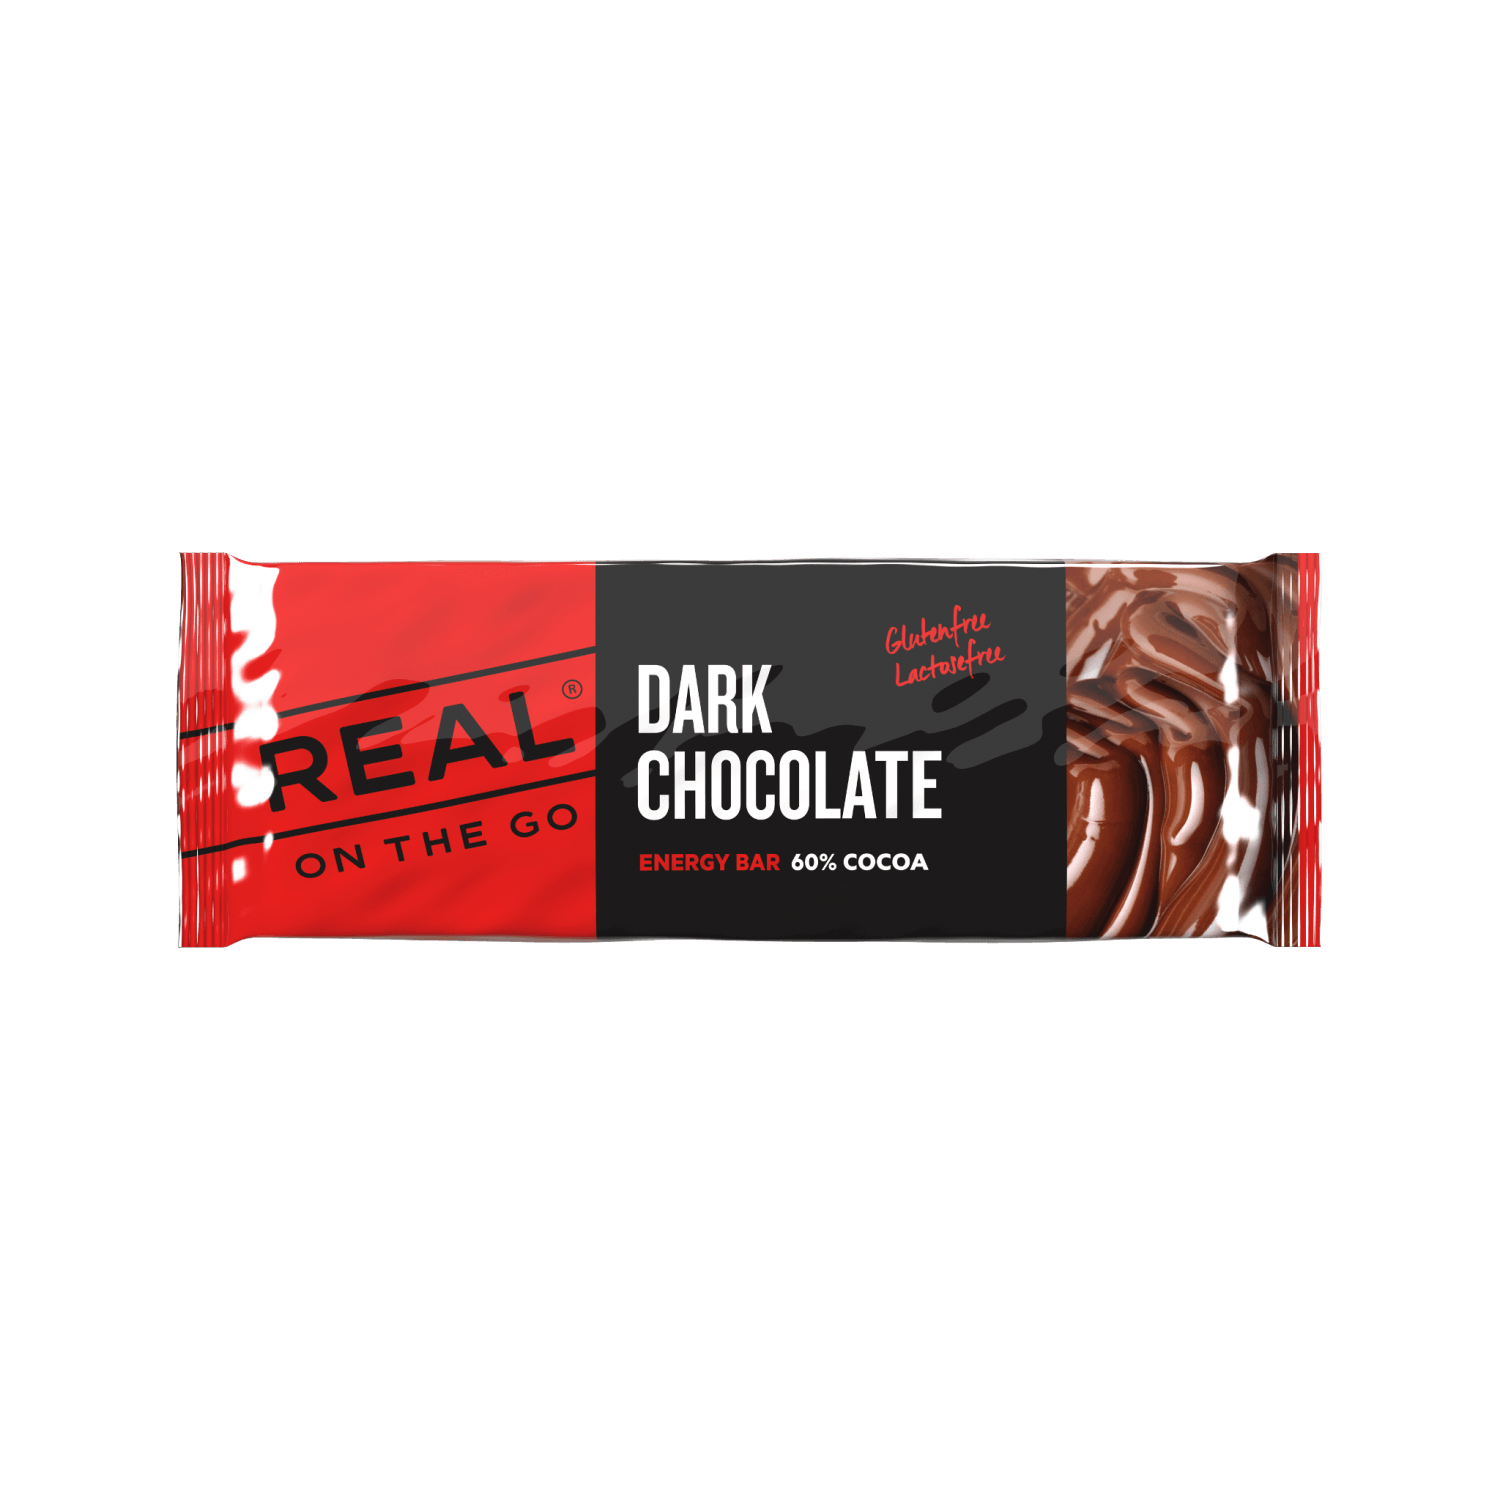 Se Real On The Go - Mørk Chokolade hos Handelshuset Aulum